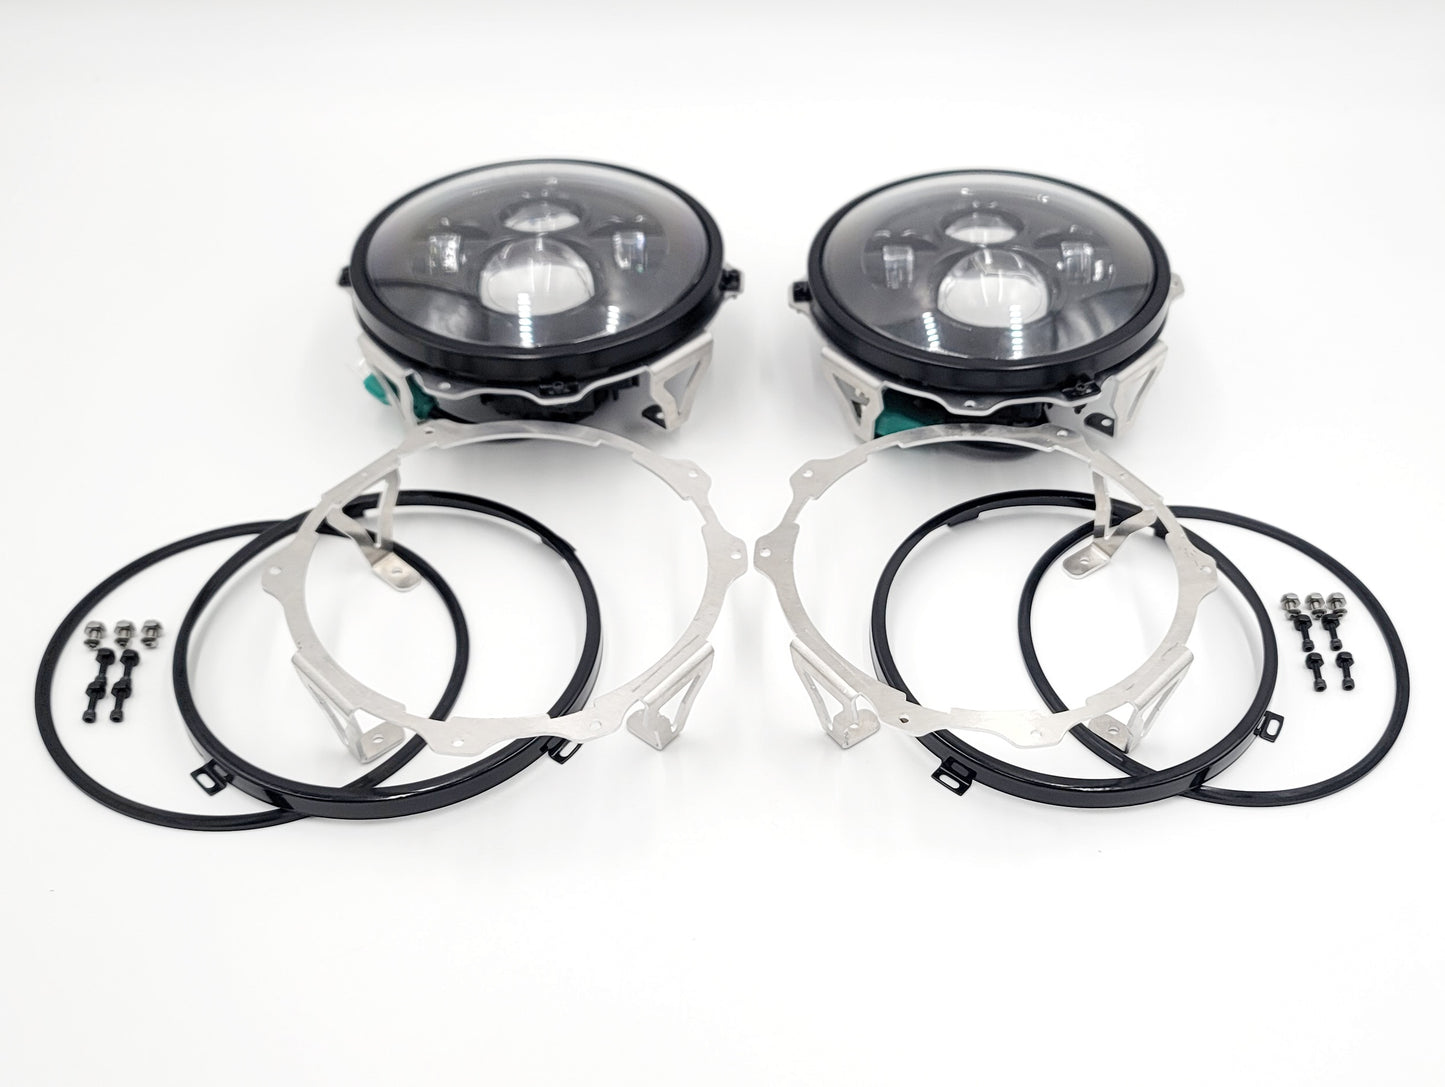 PRE-ORDER - 7" Round Headlight Adapters - Gen 3 (Metal)